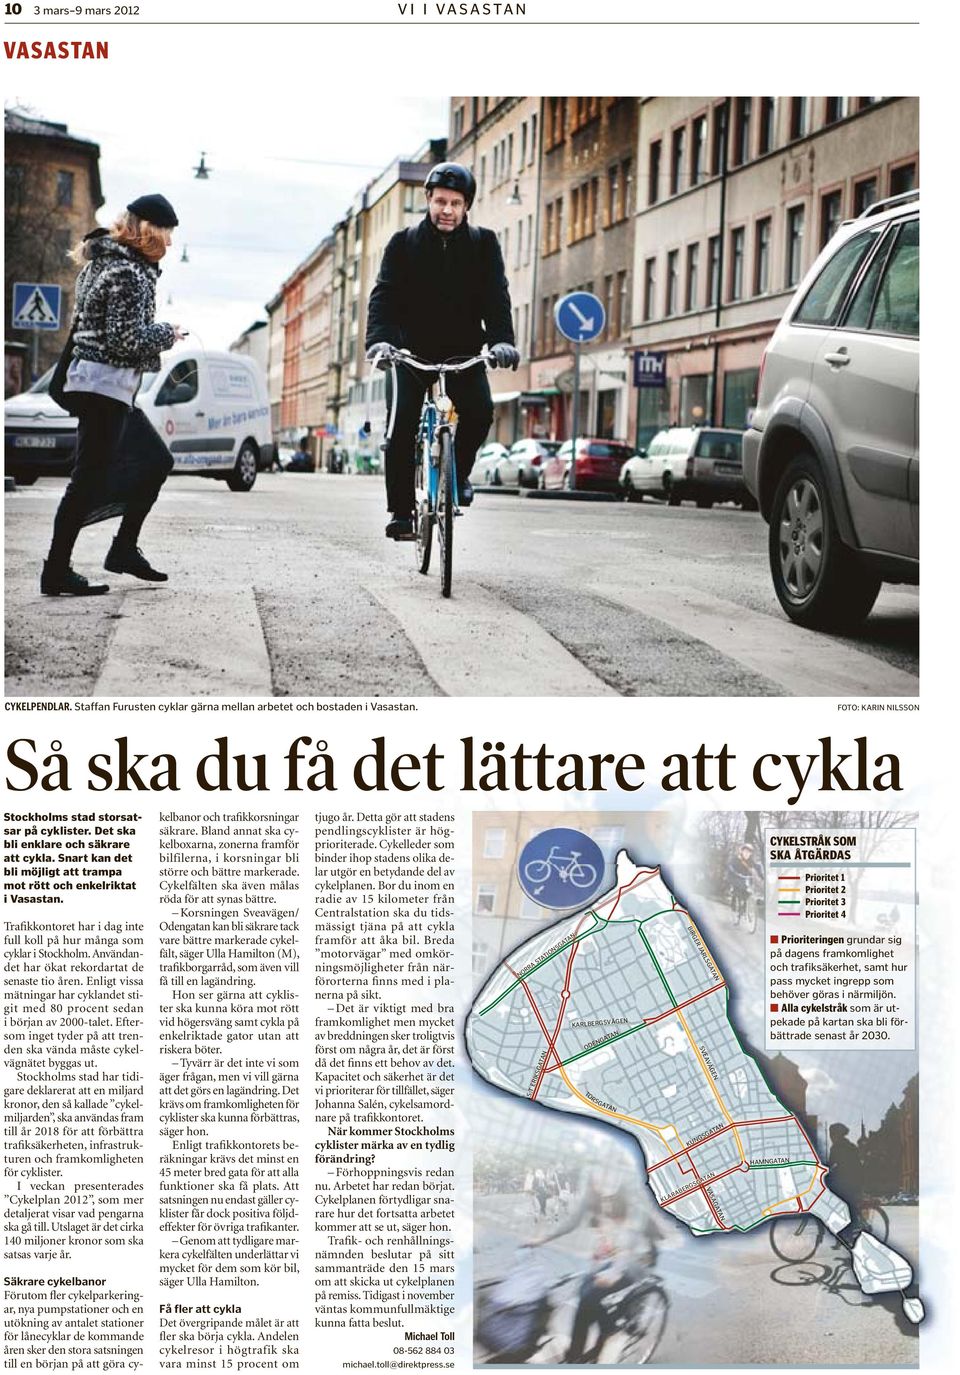 Snart kan det bli möjligt att trampa mot rött och enkelriktat i Vasastan. Trafikkontoret har i dag inte full koll på hur många som cyklar i Stockholm.